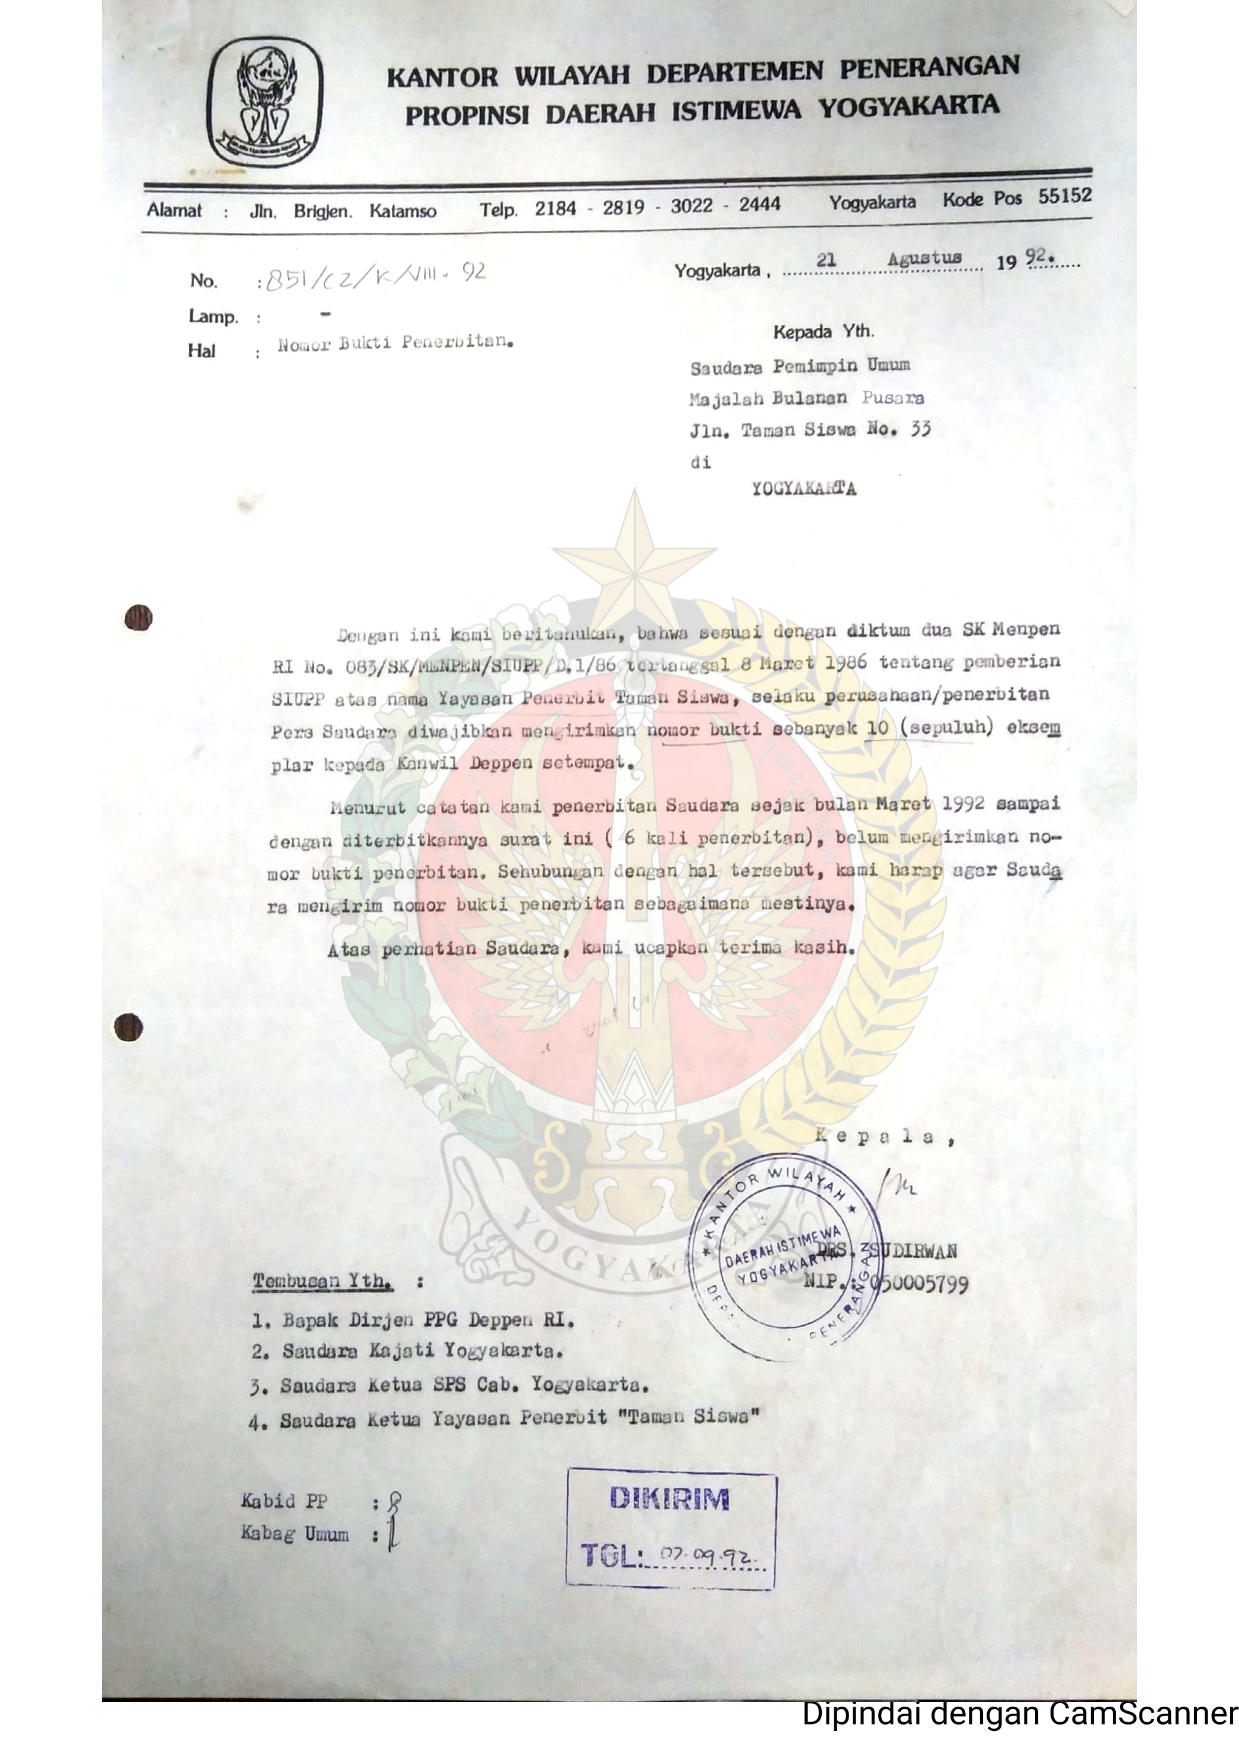         Surat dari Kepala   Kantor Wilayah Departemen   Penerangan Daerah Istimewa   Yogyakarta kepada Pemimpin Umum Majalah Bulanan Pusara perihal belum mengirim   Nomor Bukti   Penerbitan dari Maret 1992 sampai diterbitkannya surat ini (6 kali   penerbitan).